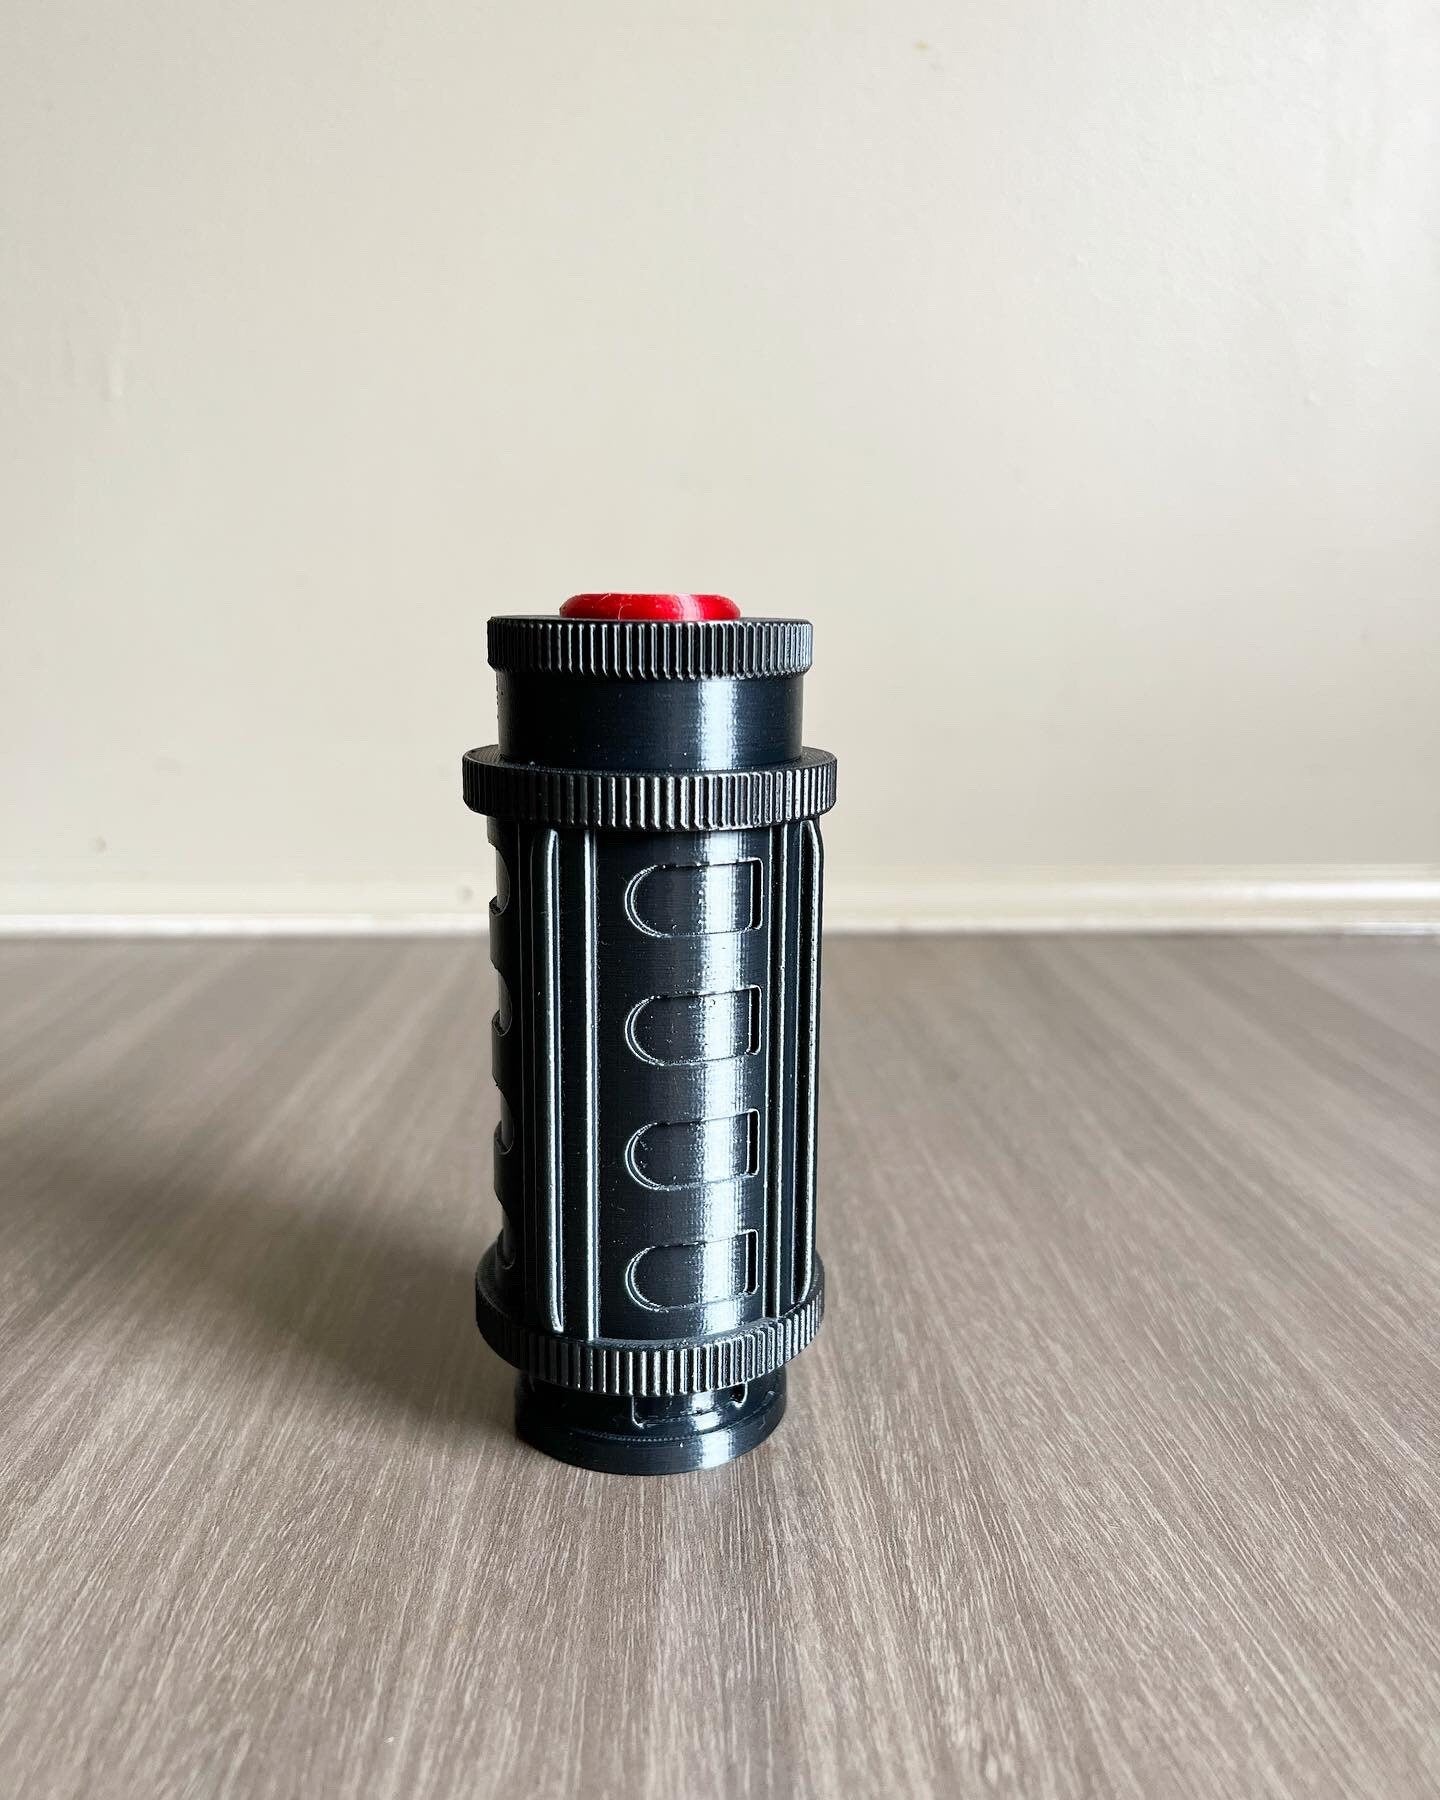 Flash Grenade Full Scale Replica